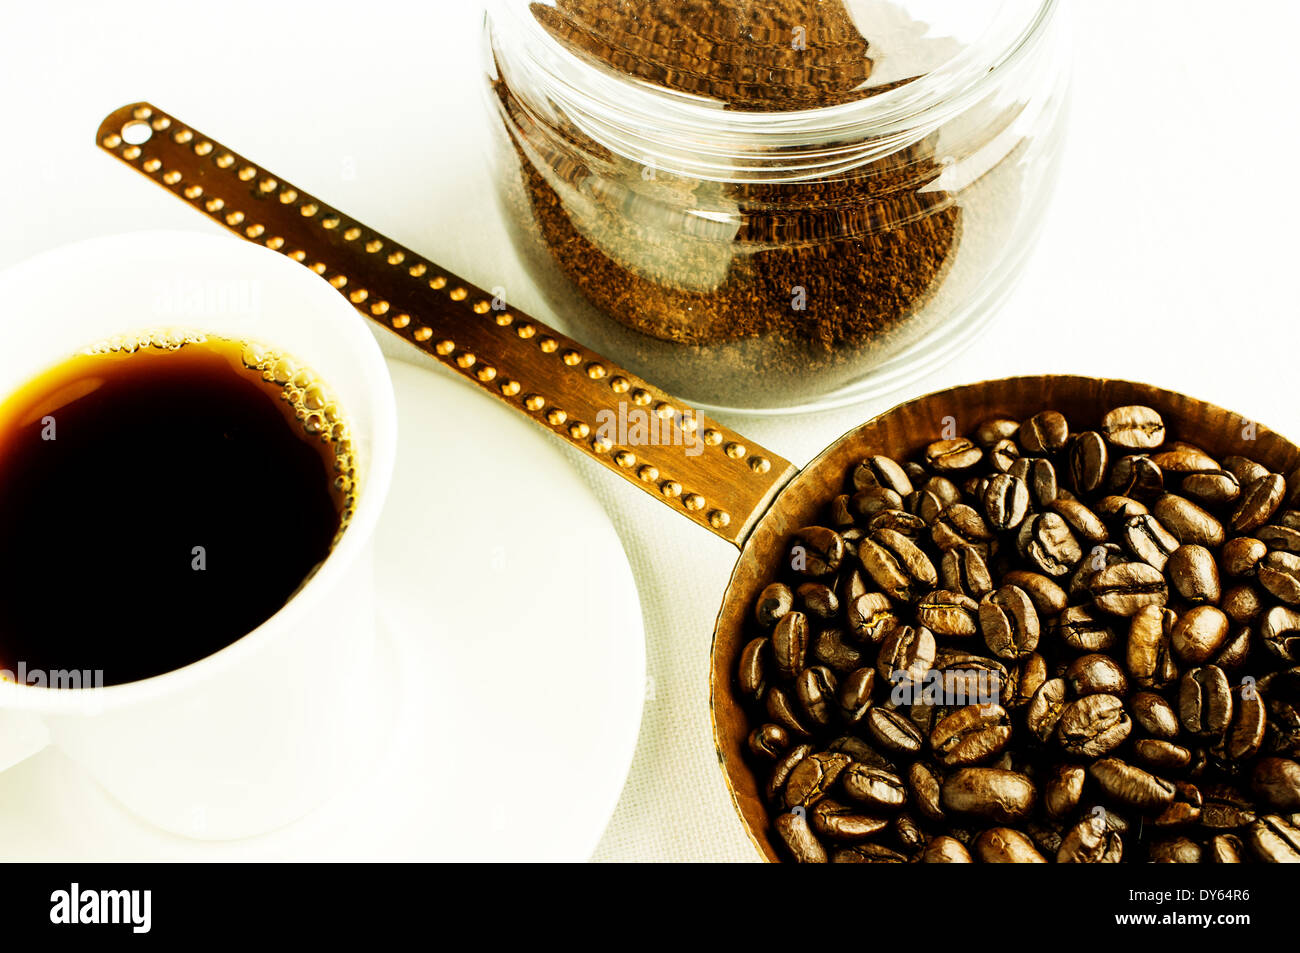 Kaffeebohnen in eine alte Kupfer Pfanne. Gemahlenen Kaffee in ein Glas.  Löslicher Kaffeetasse Stockfotografie - Alamy